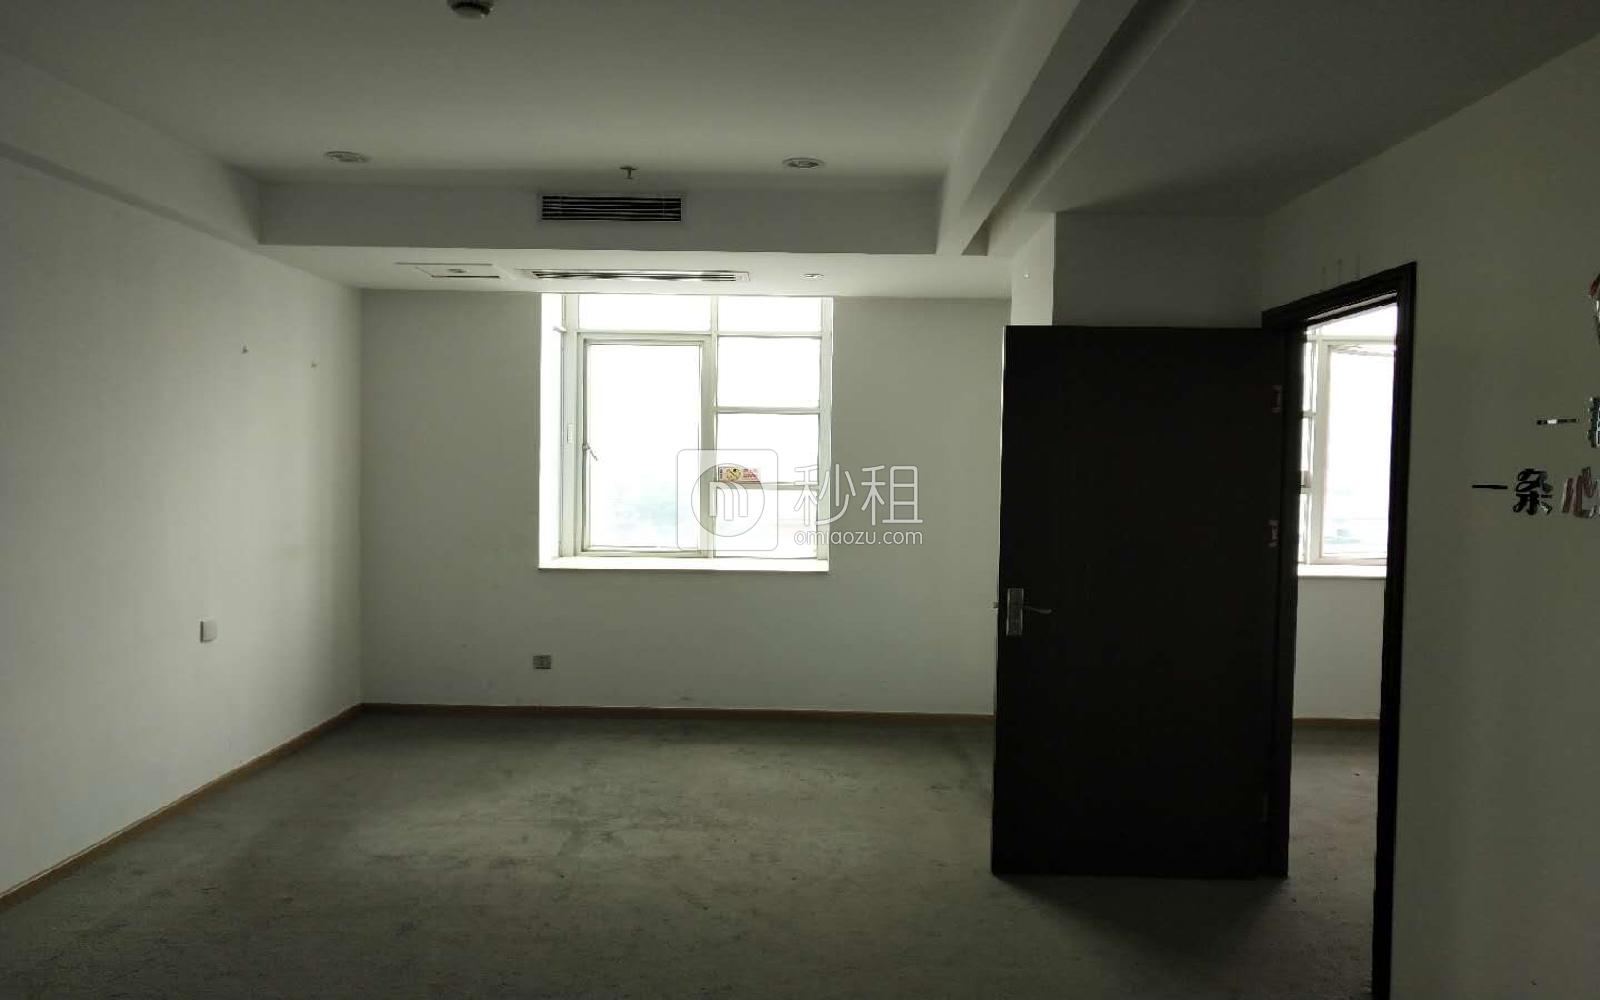  铨森泰文化产业园写字楼出租105平米精装办公室53元/m².月